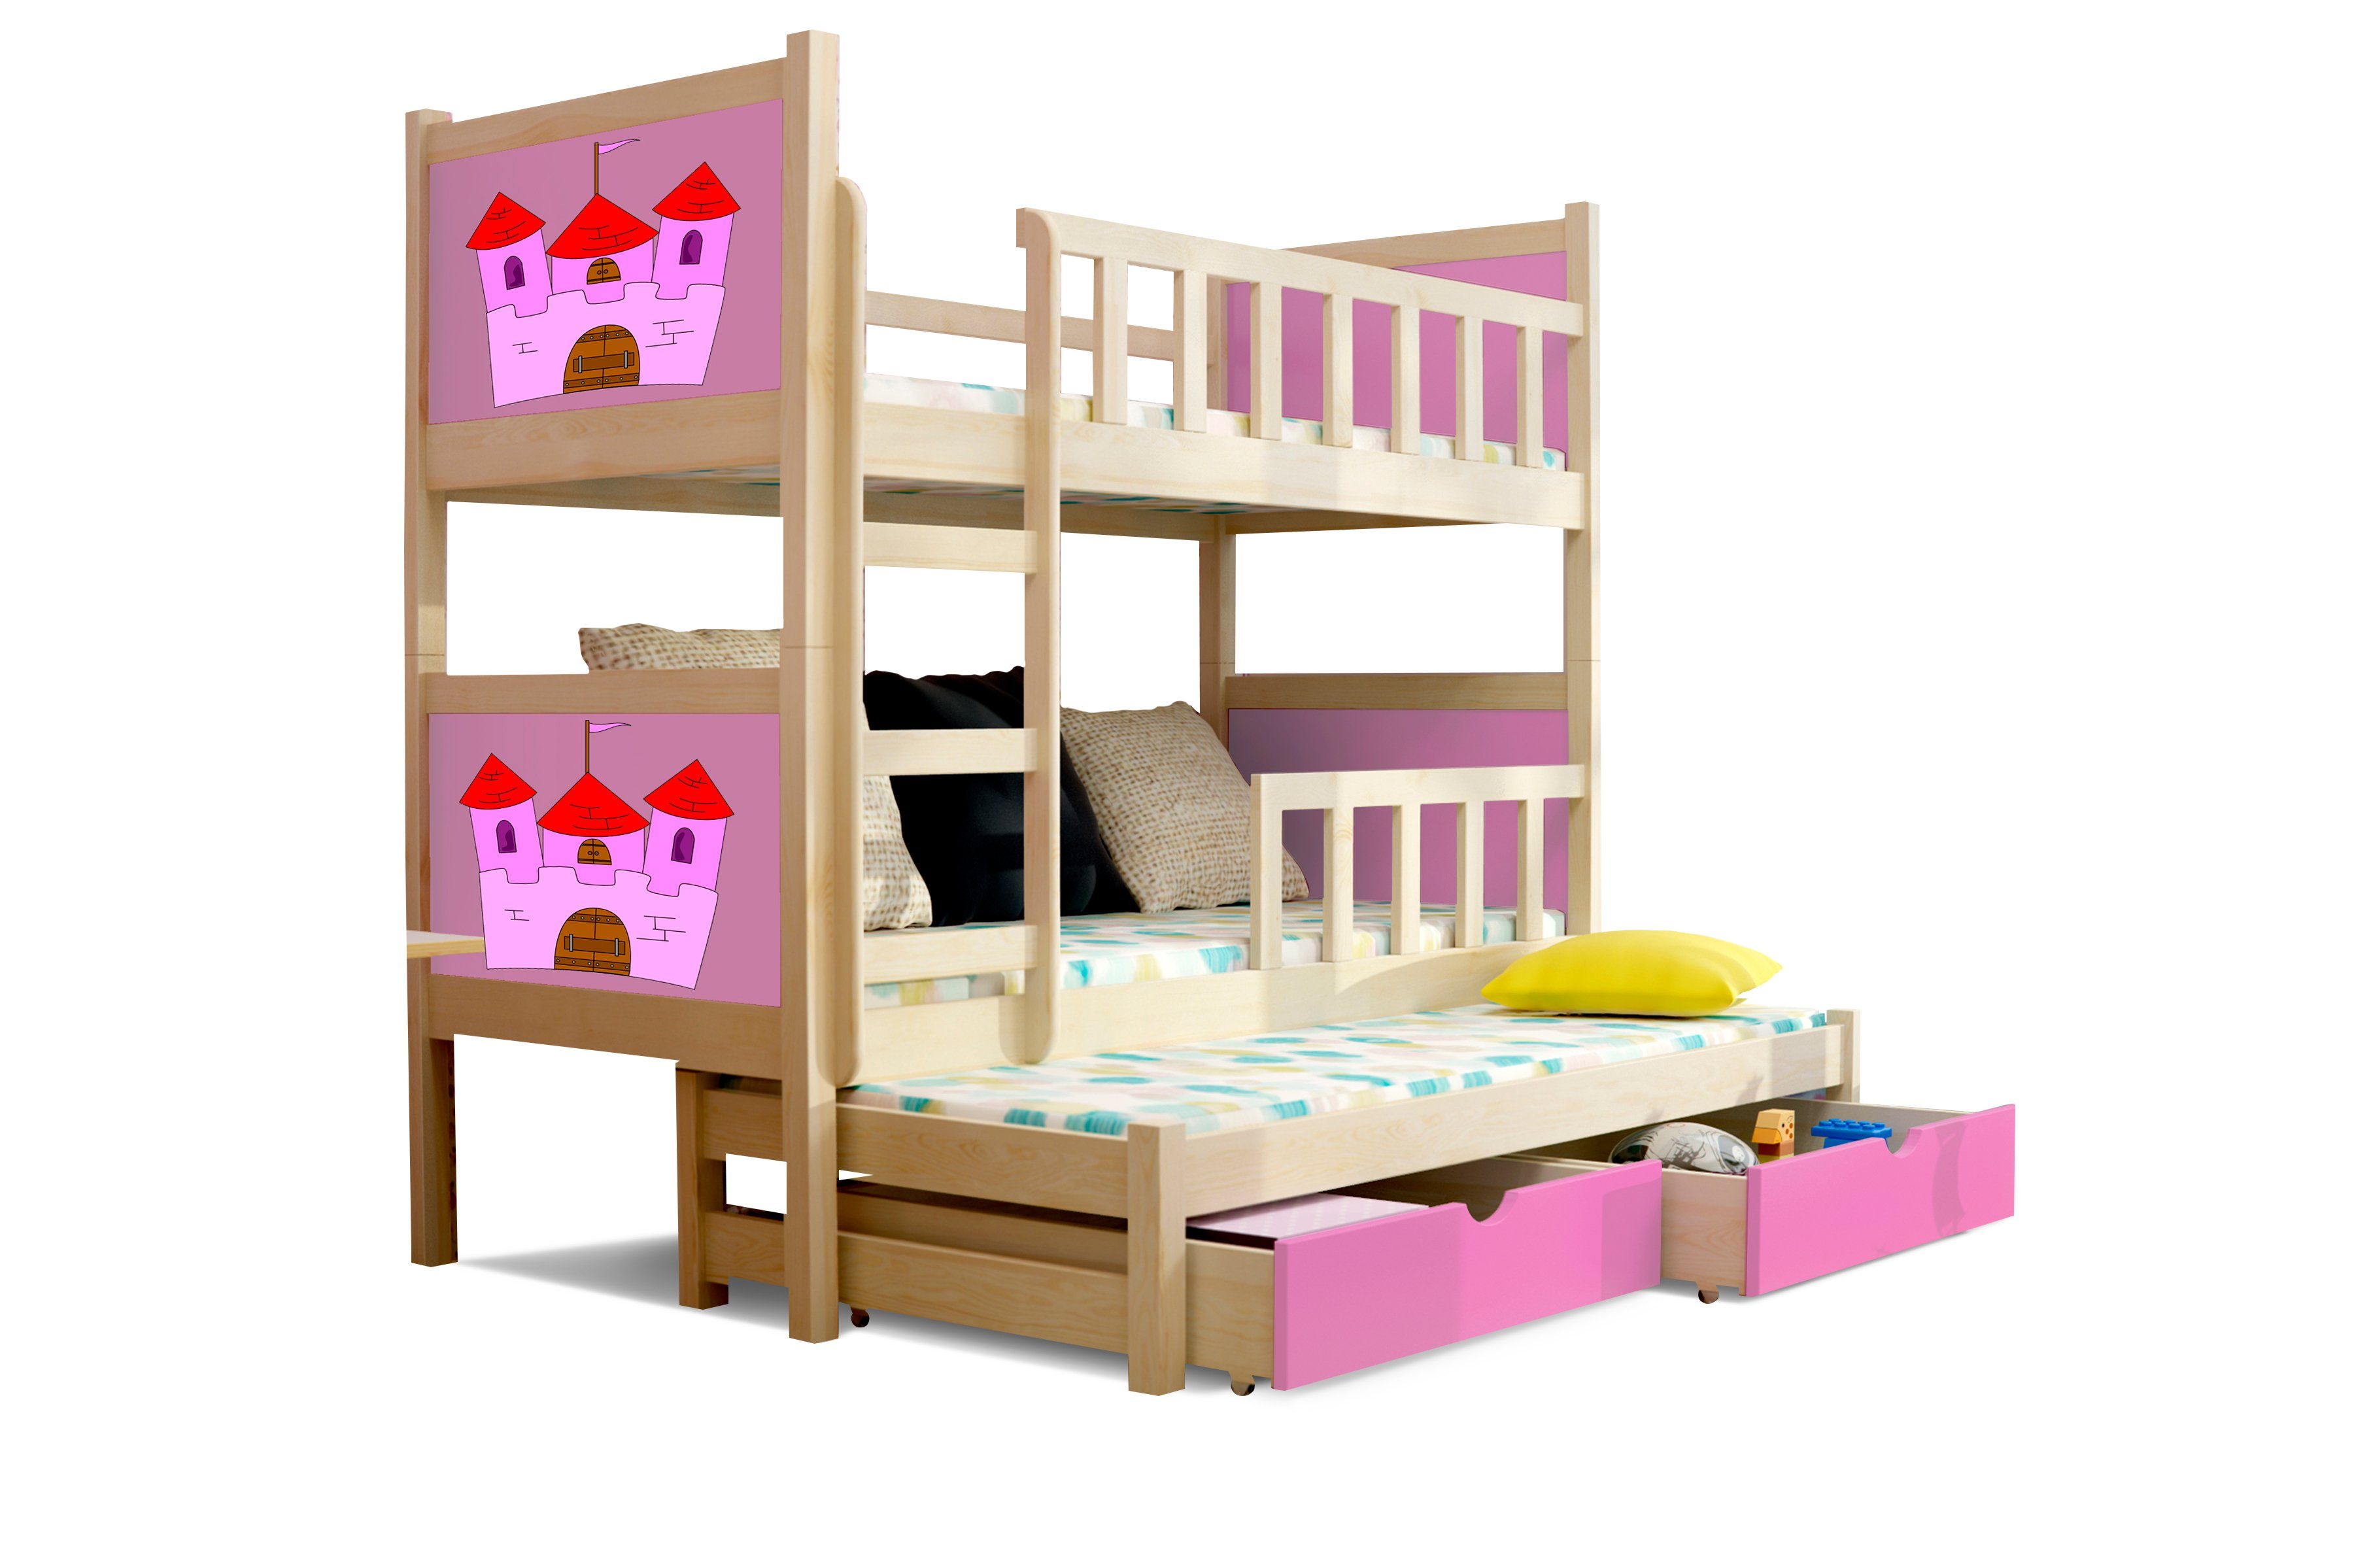 Stylefy Kinderbett Zoo II (Kinderbett, Bett), 190x80 cm, mit Bettkasten,  Kieferholz, mit Leiter und Rausfallschutz, Modern Design, für Kinder